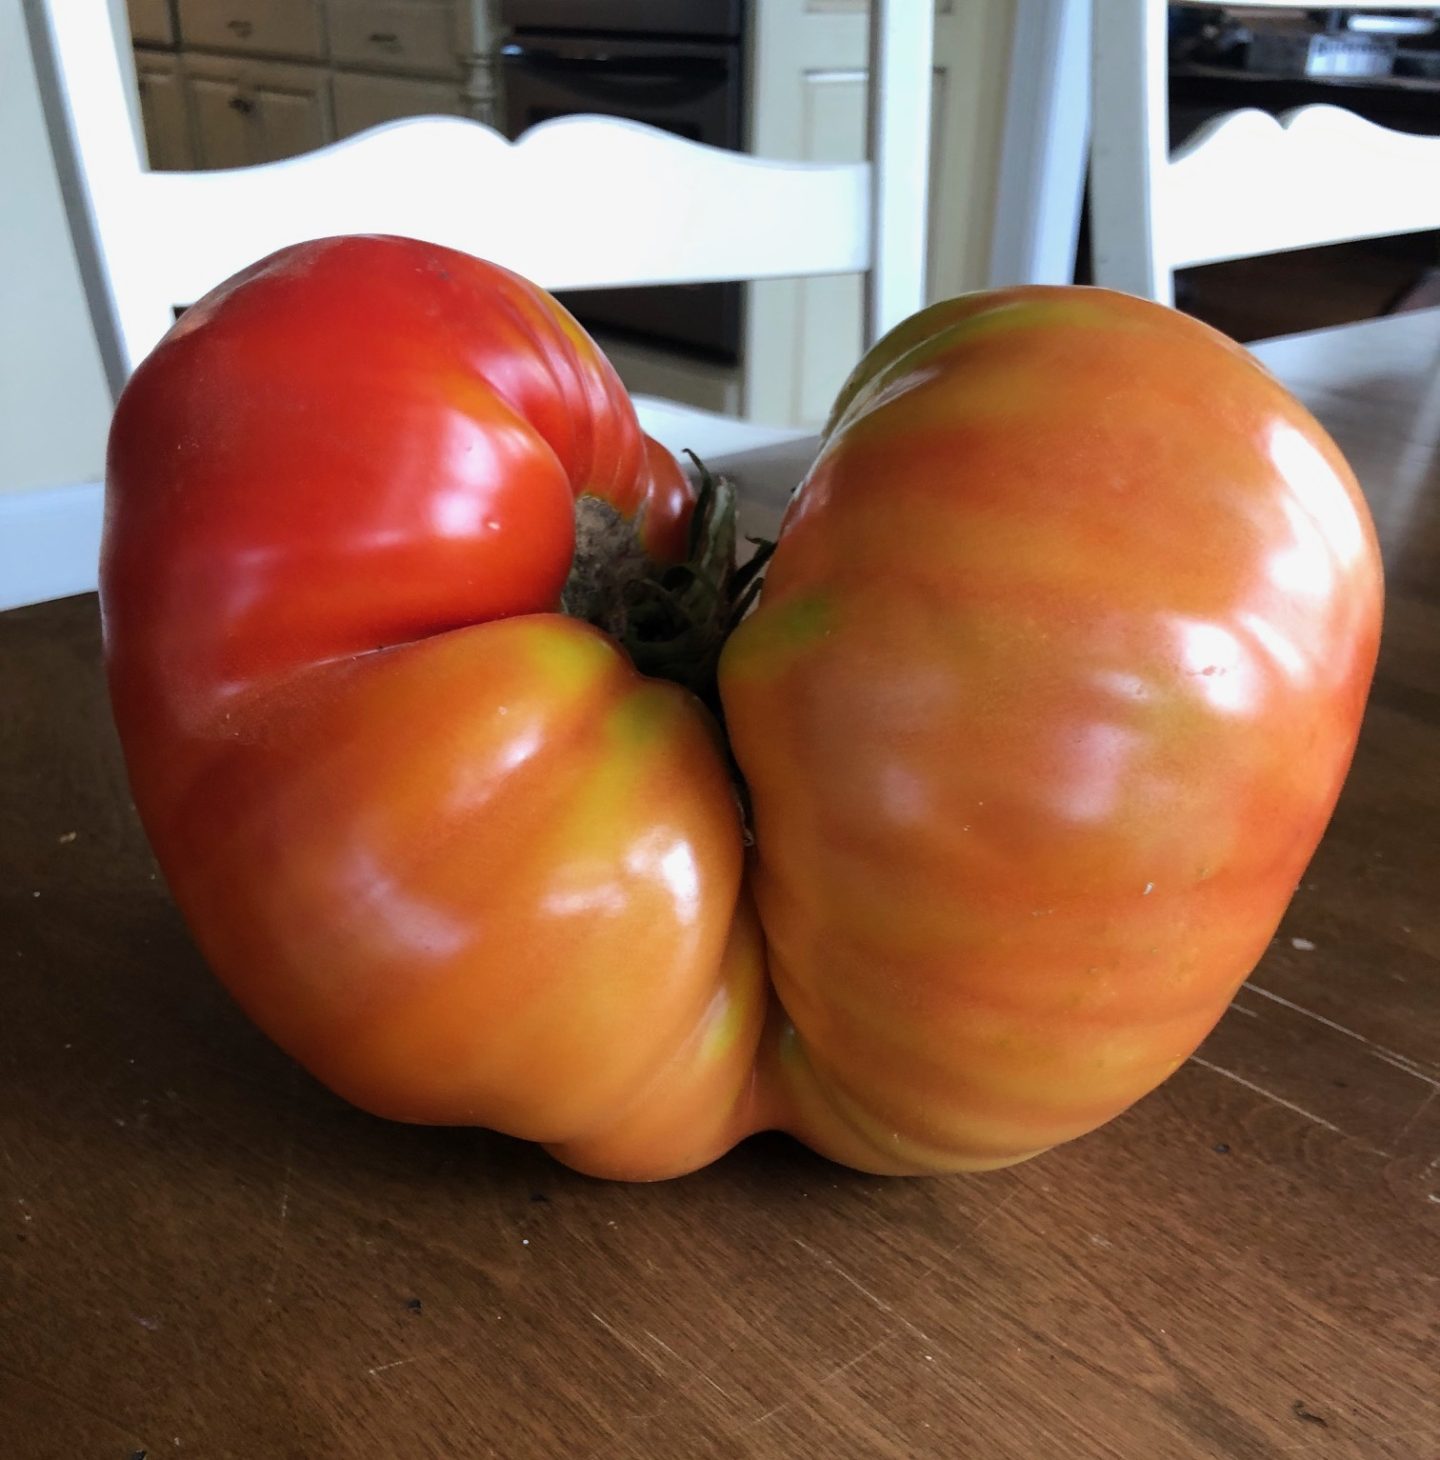 giant tomato